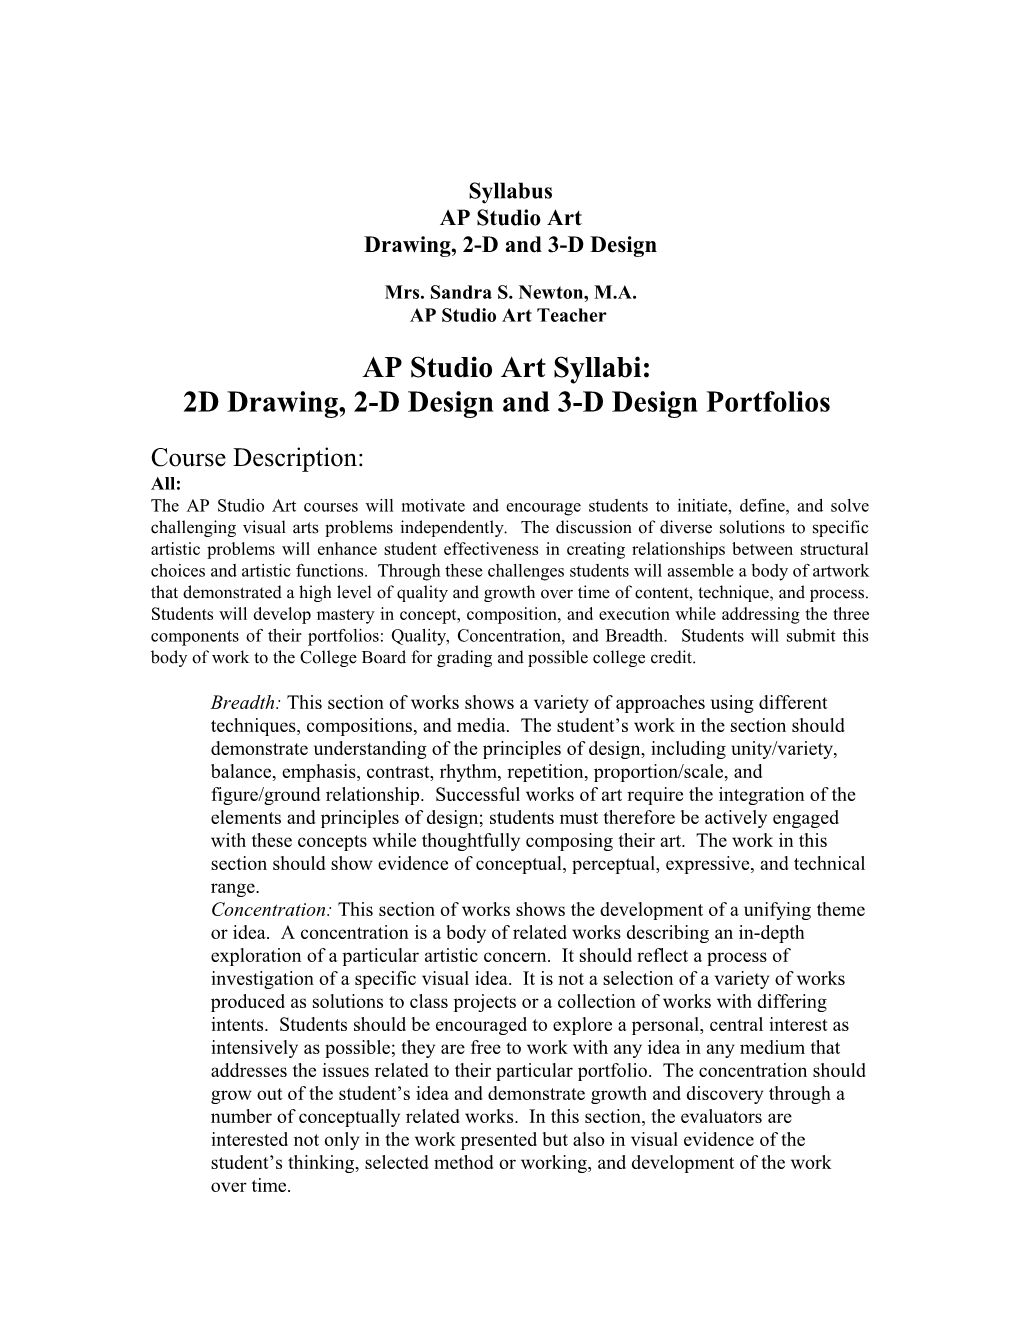 AP Studio Art Syllabi: Drawing, 2-D Design and 3-D Design Portfolios